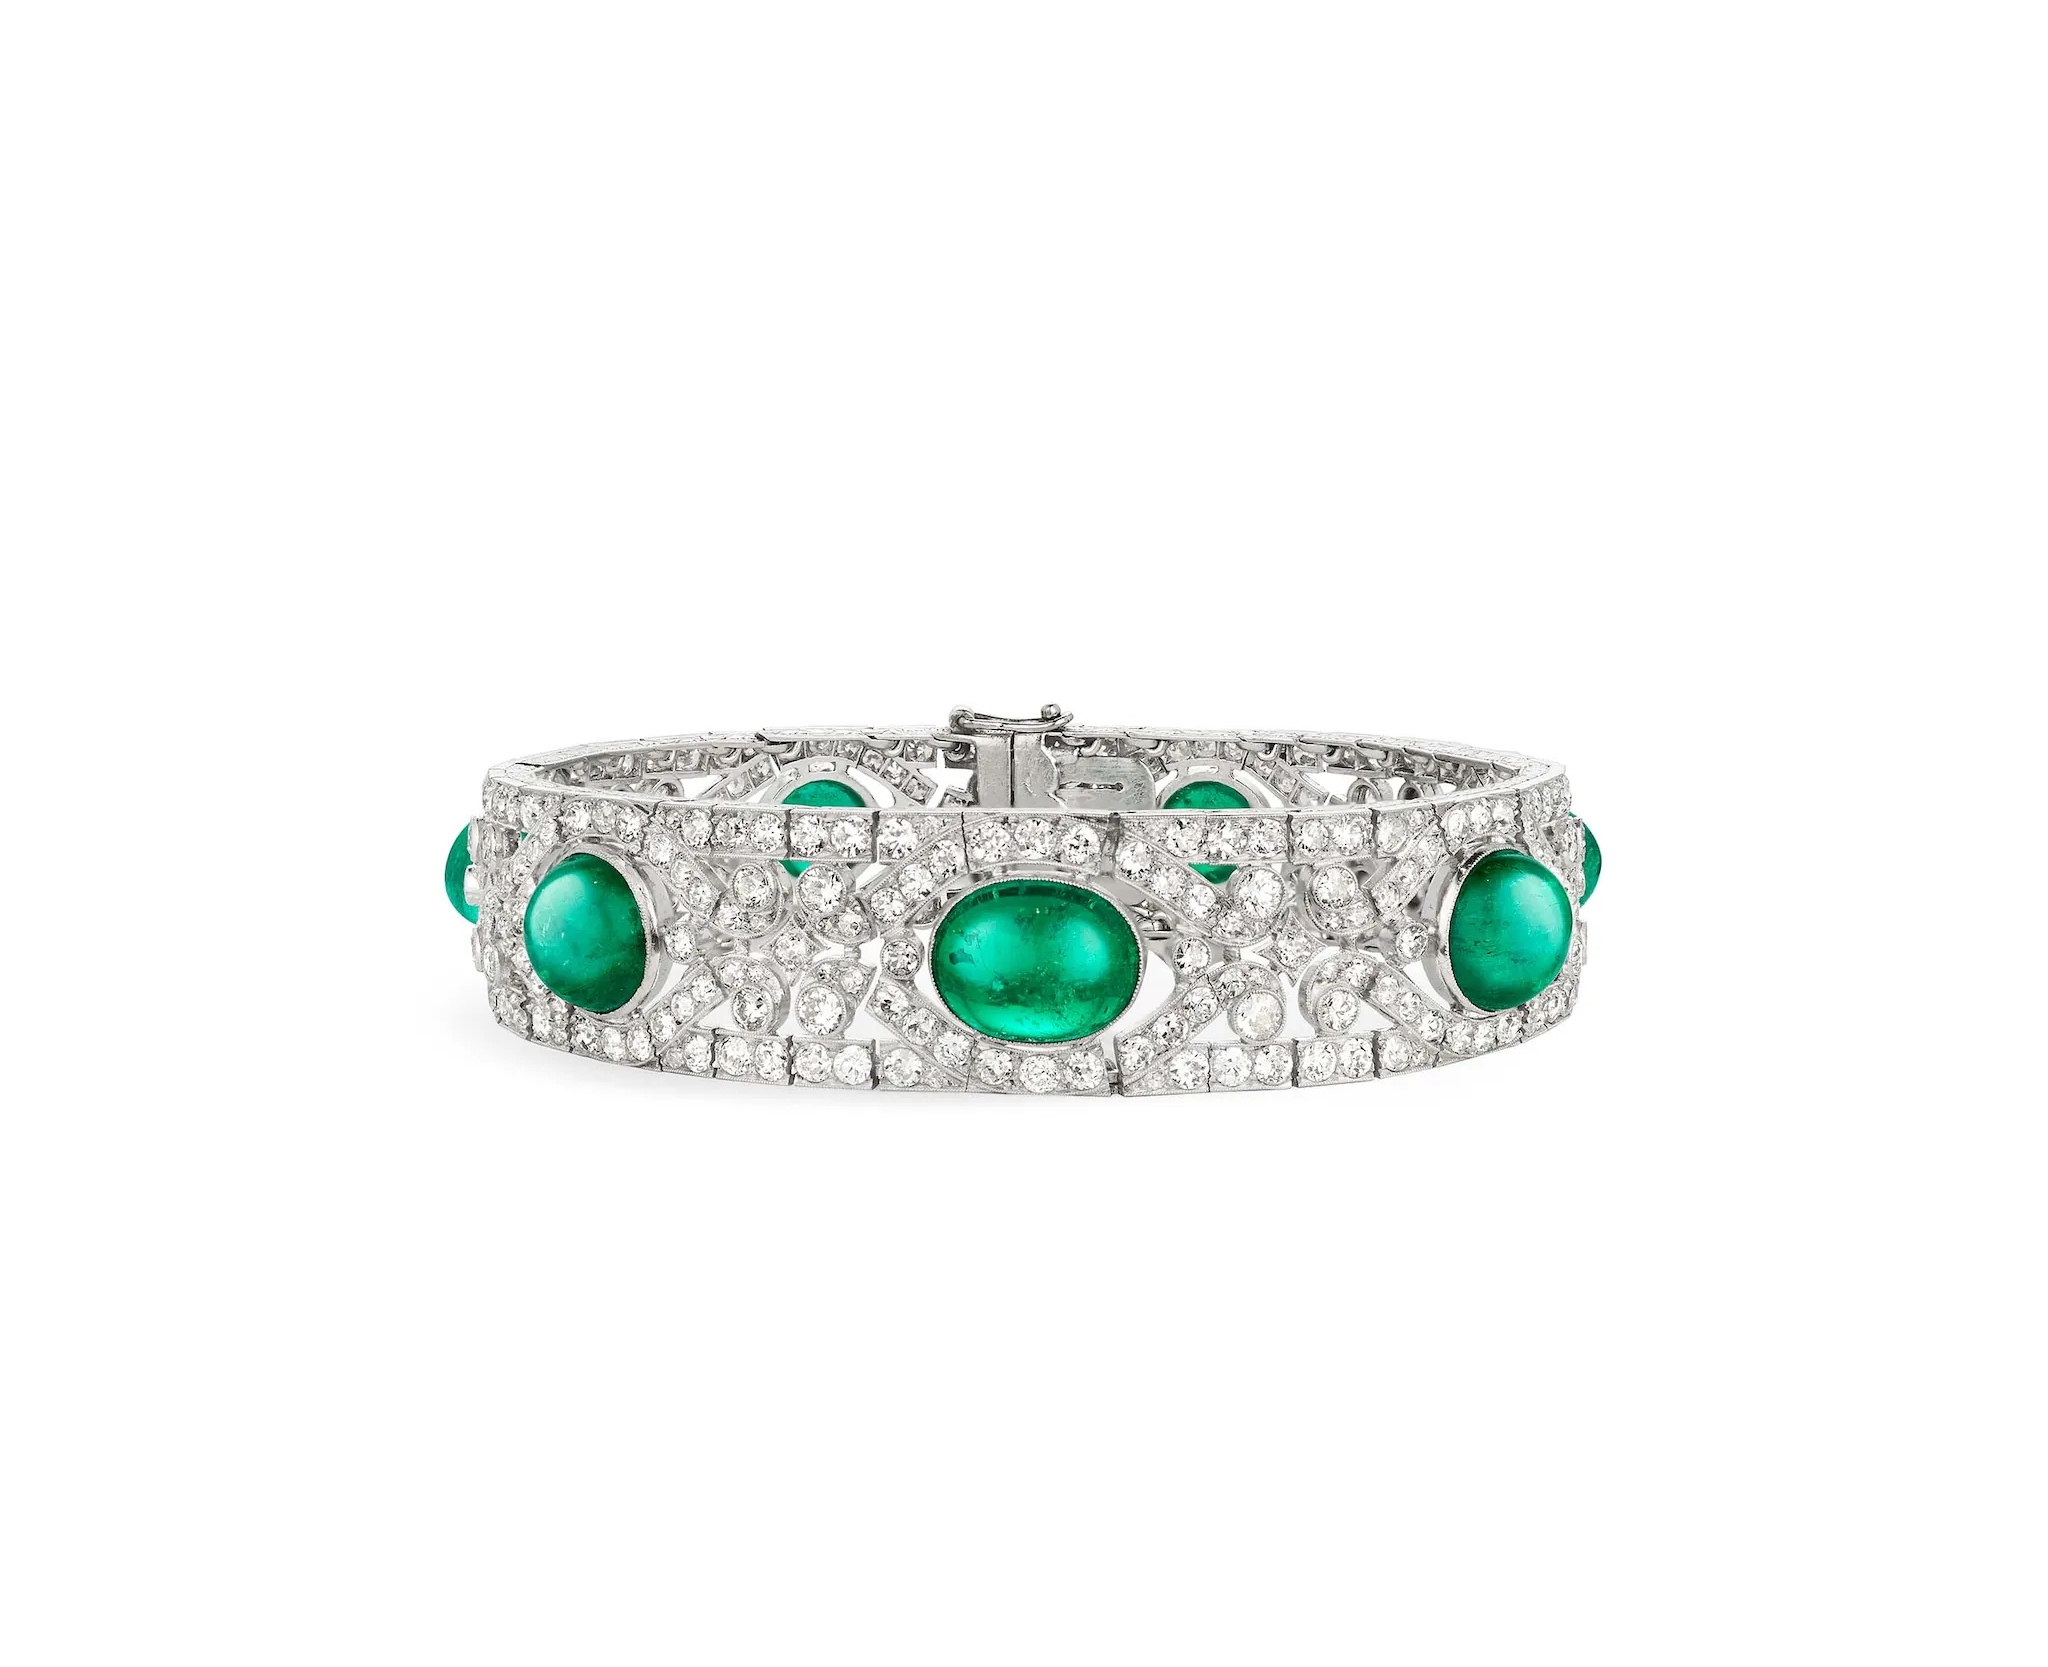 Van-Cleef-Arpels-Bracelet-1921-Platinum-emeralds-diamonds_Van-Cleef-Arpels-Collection_2